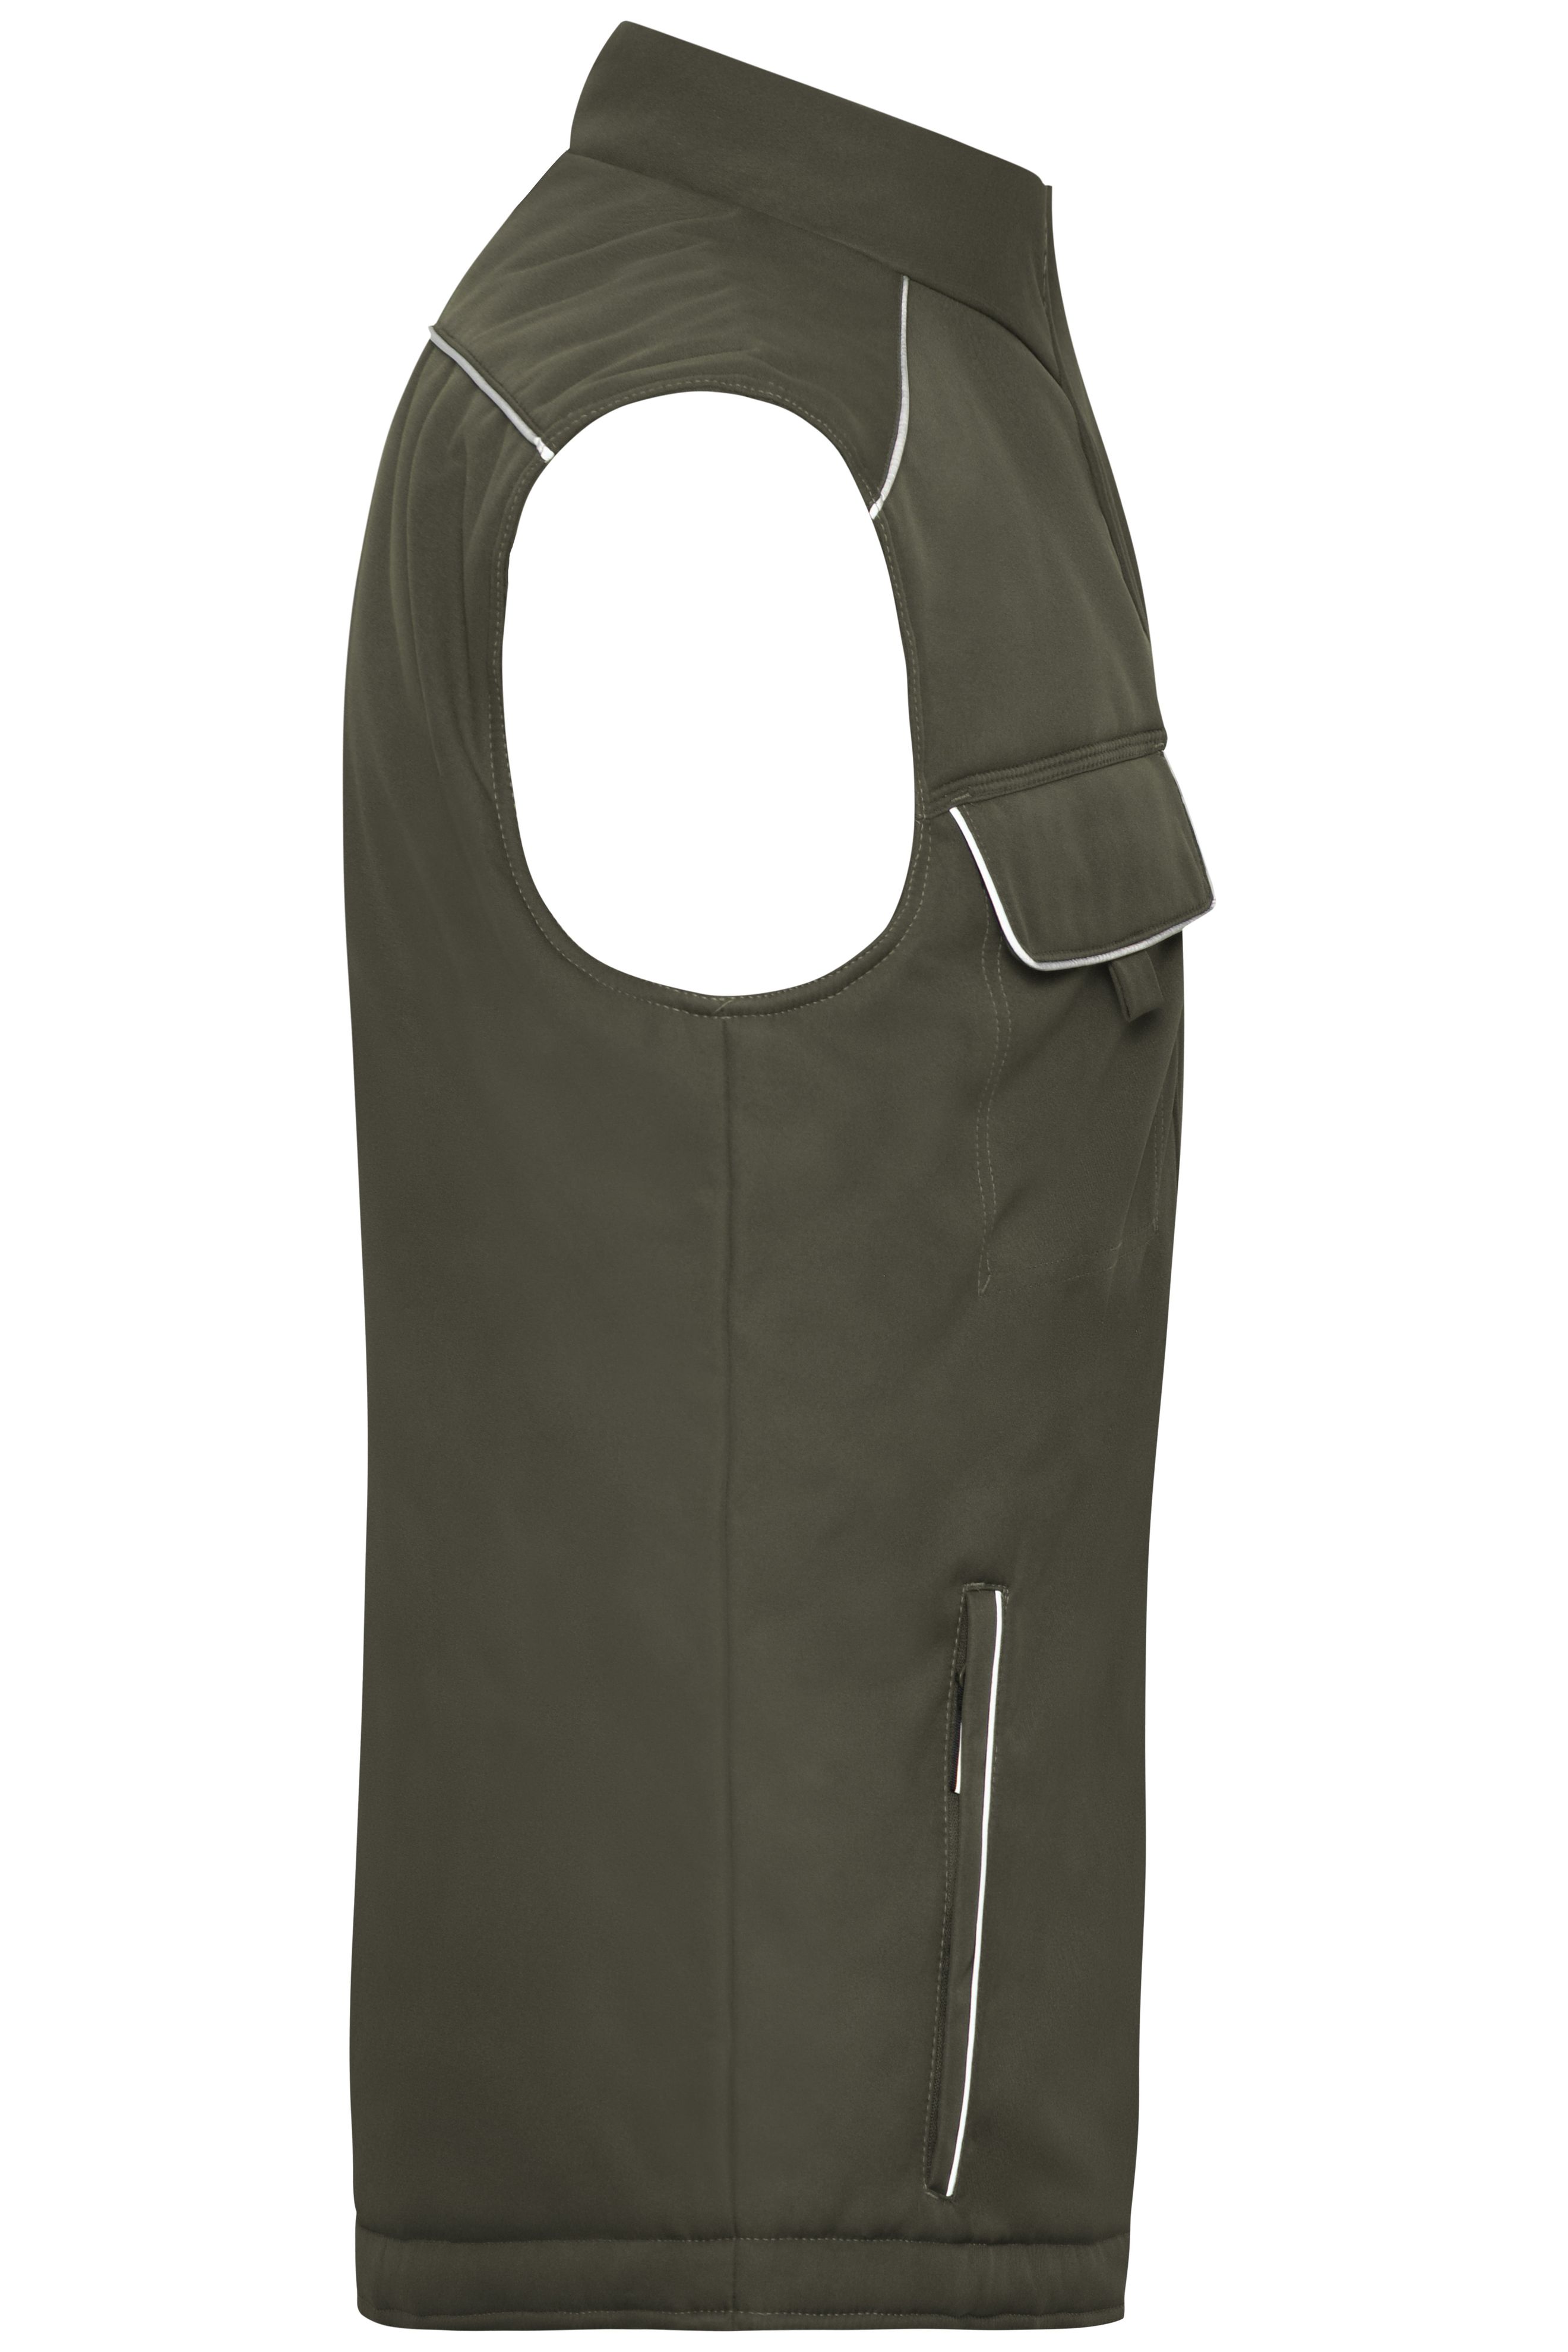 Workwear Softshell Padded Vest - SOLID - JN885 Professionelle Softshellweste mit warmem Innenfutter und hochwertigen Details im cleanen Look